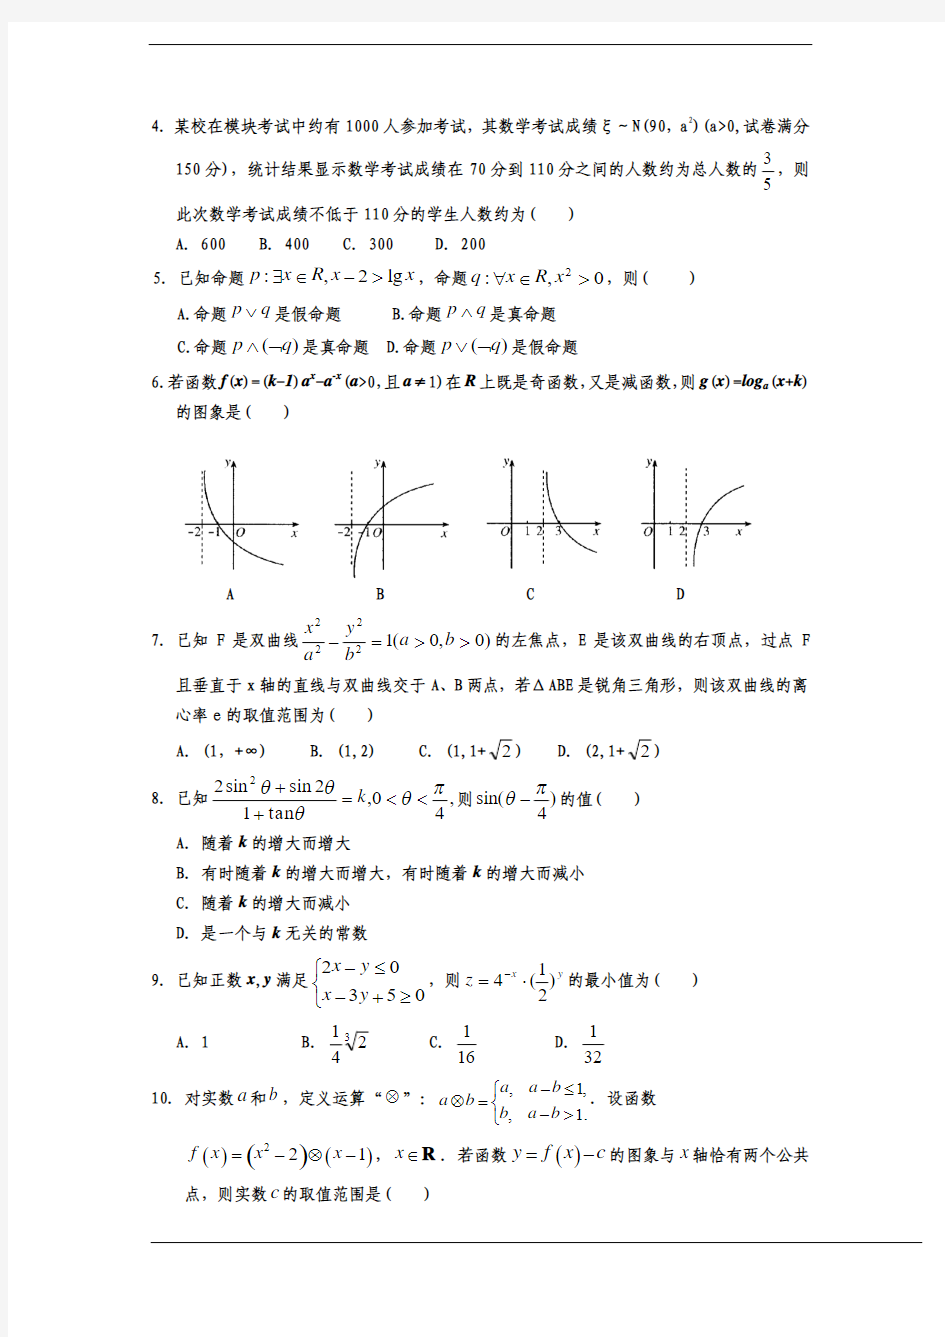 2012-2013学年 - 宁夏 - 银川一中 - 高三 - 名校试卷(第二次模拟) - 理科 - 数学